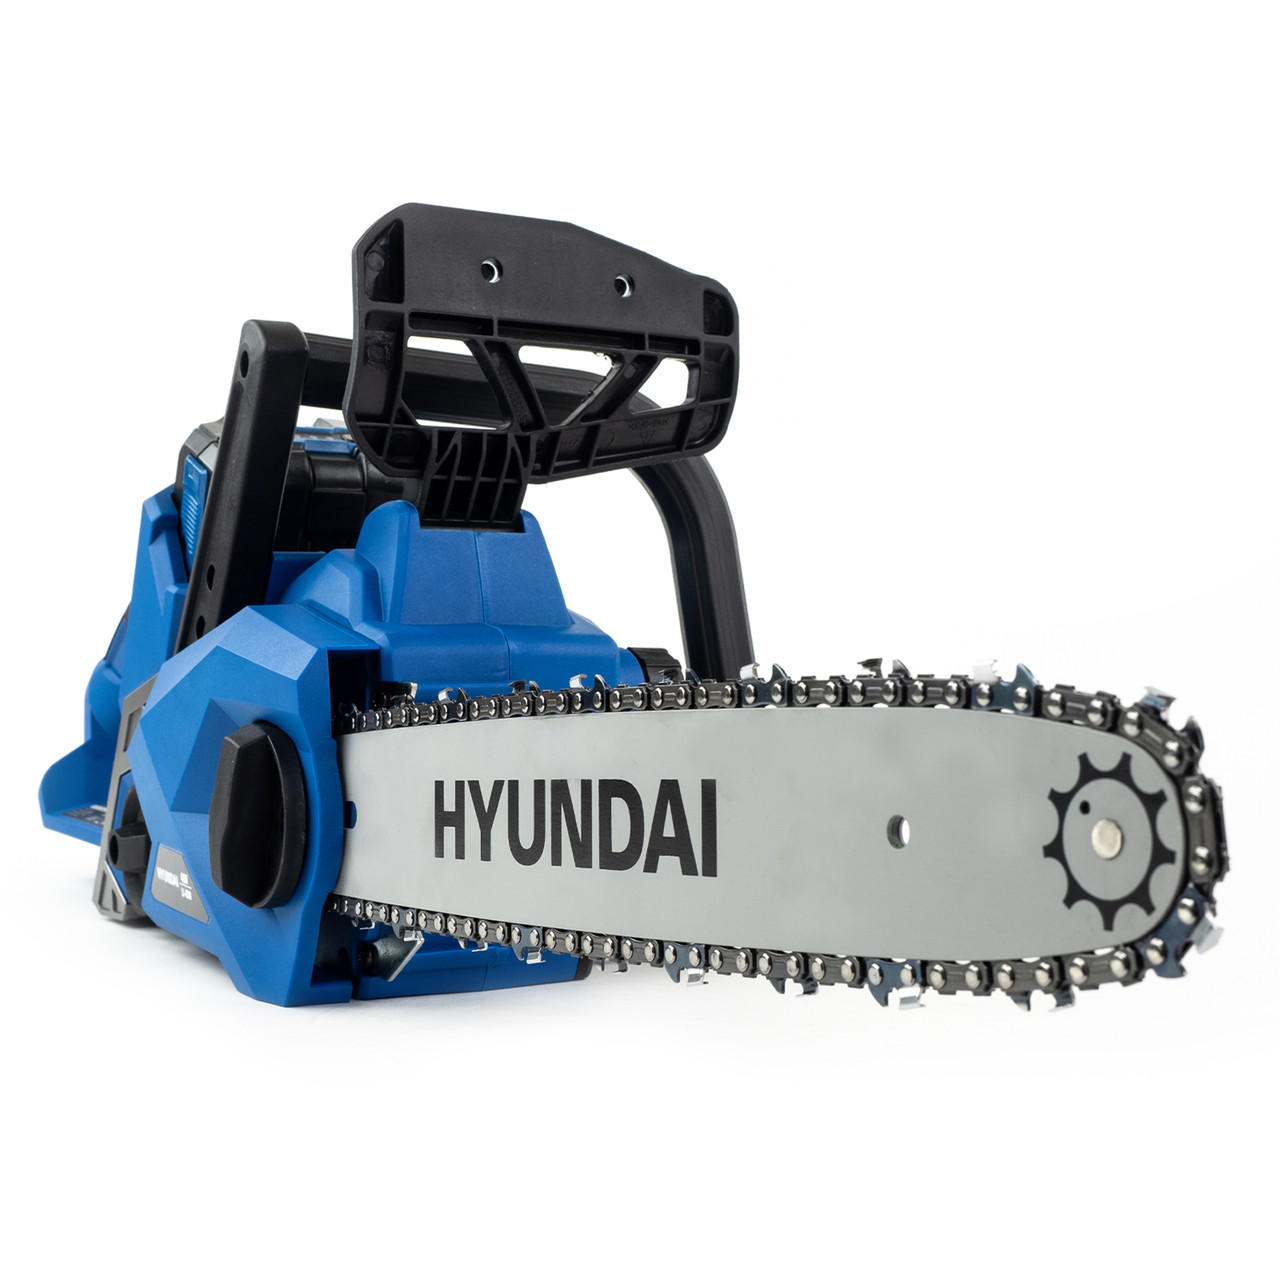 Hyundai HYC40LI 14" 40V Cordless Chainsaw Kit